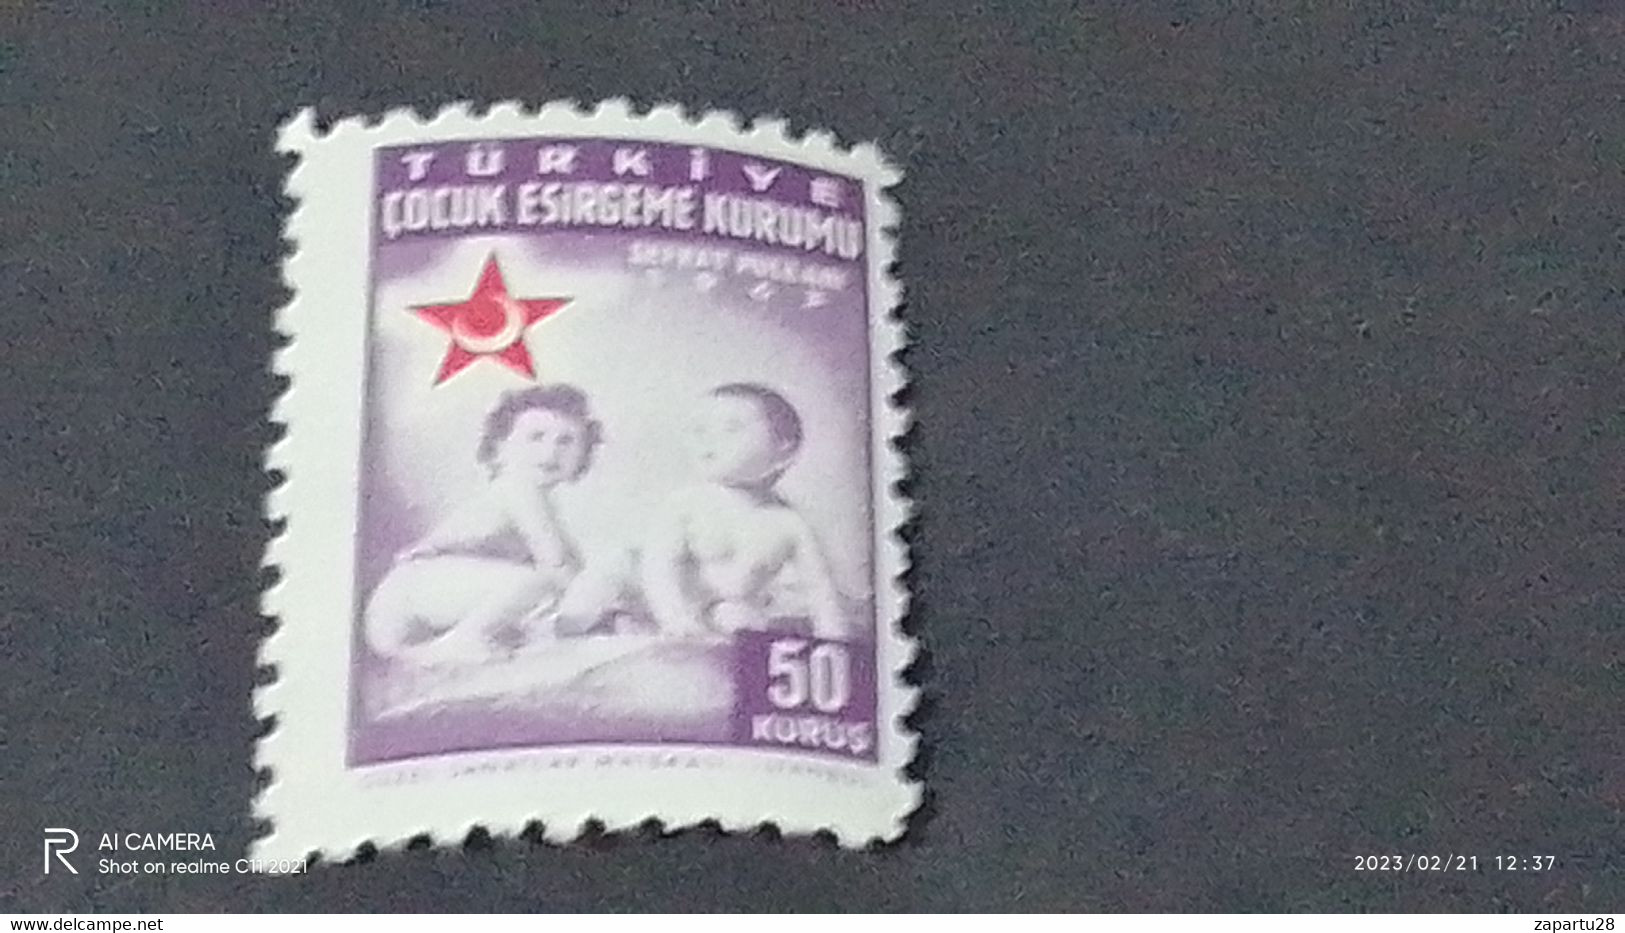 TÜRKEY--YARDIM PULLARI- 1950-60   ÇOCUK ESİRGEME 10K  DAMGASIZ - Charity Stamps